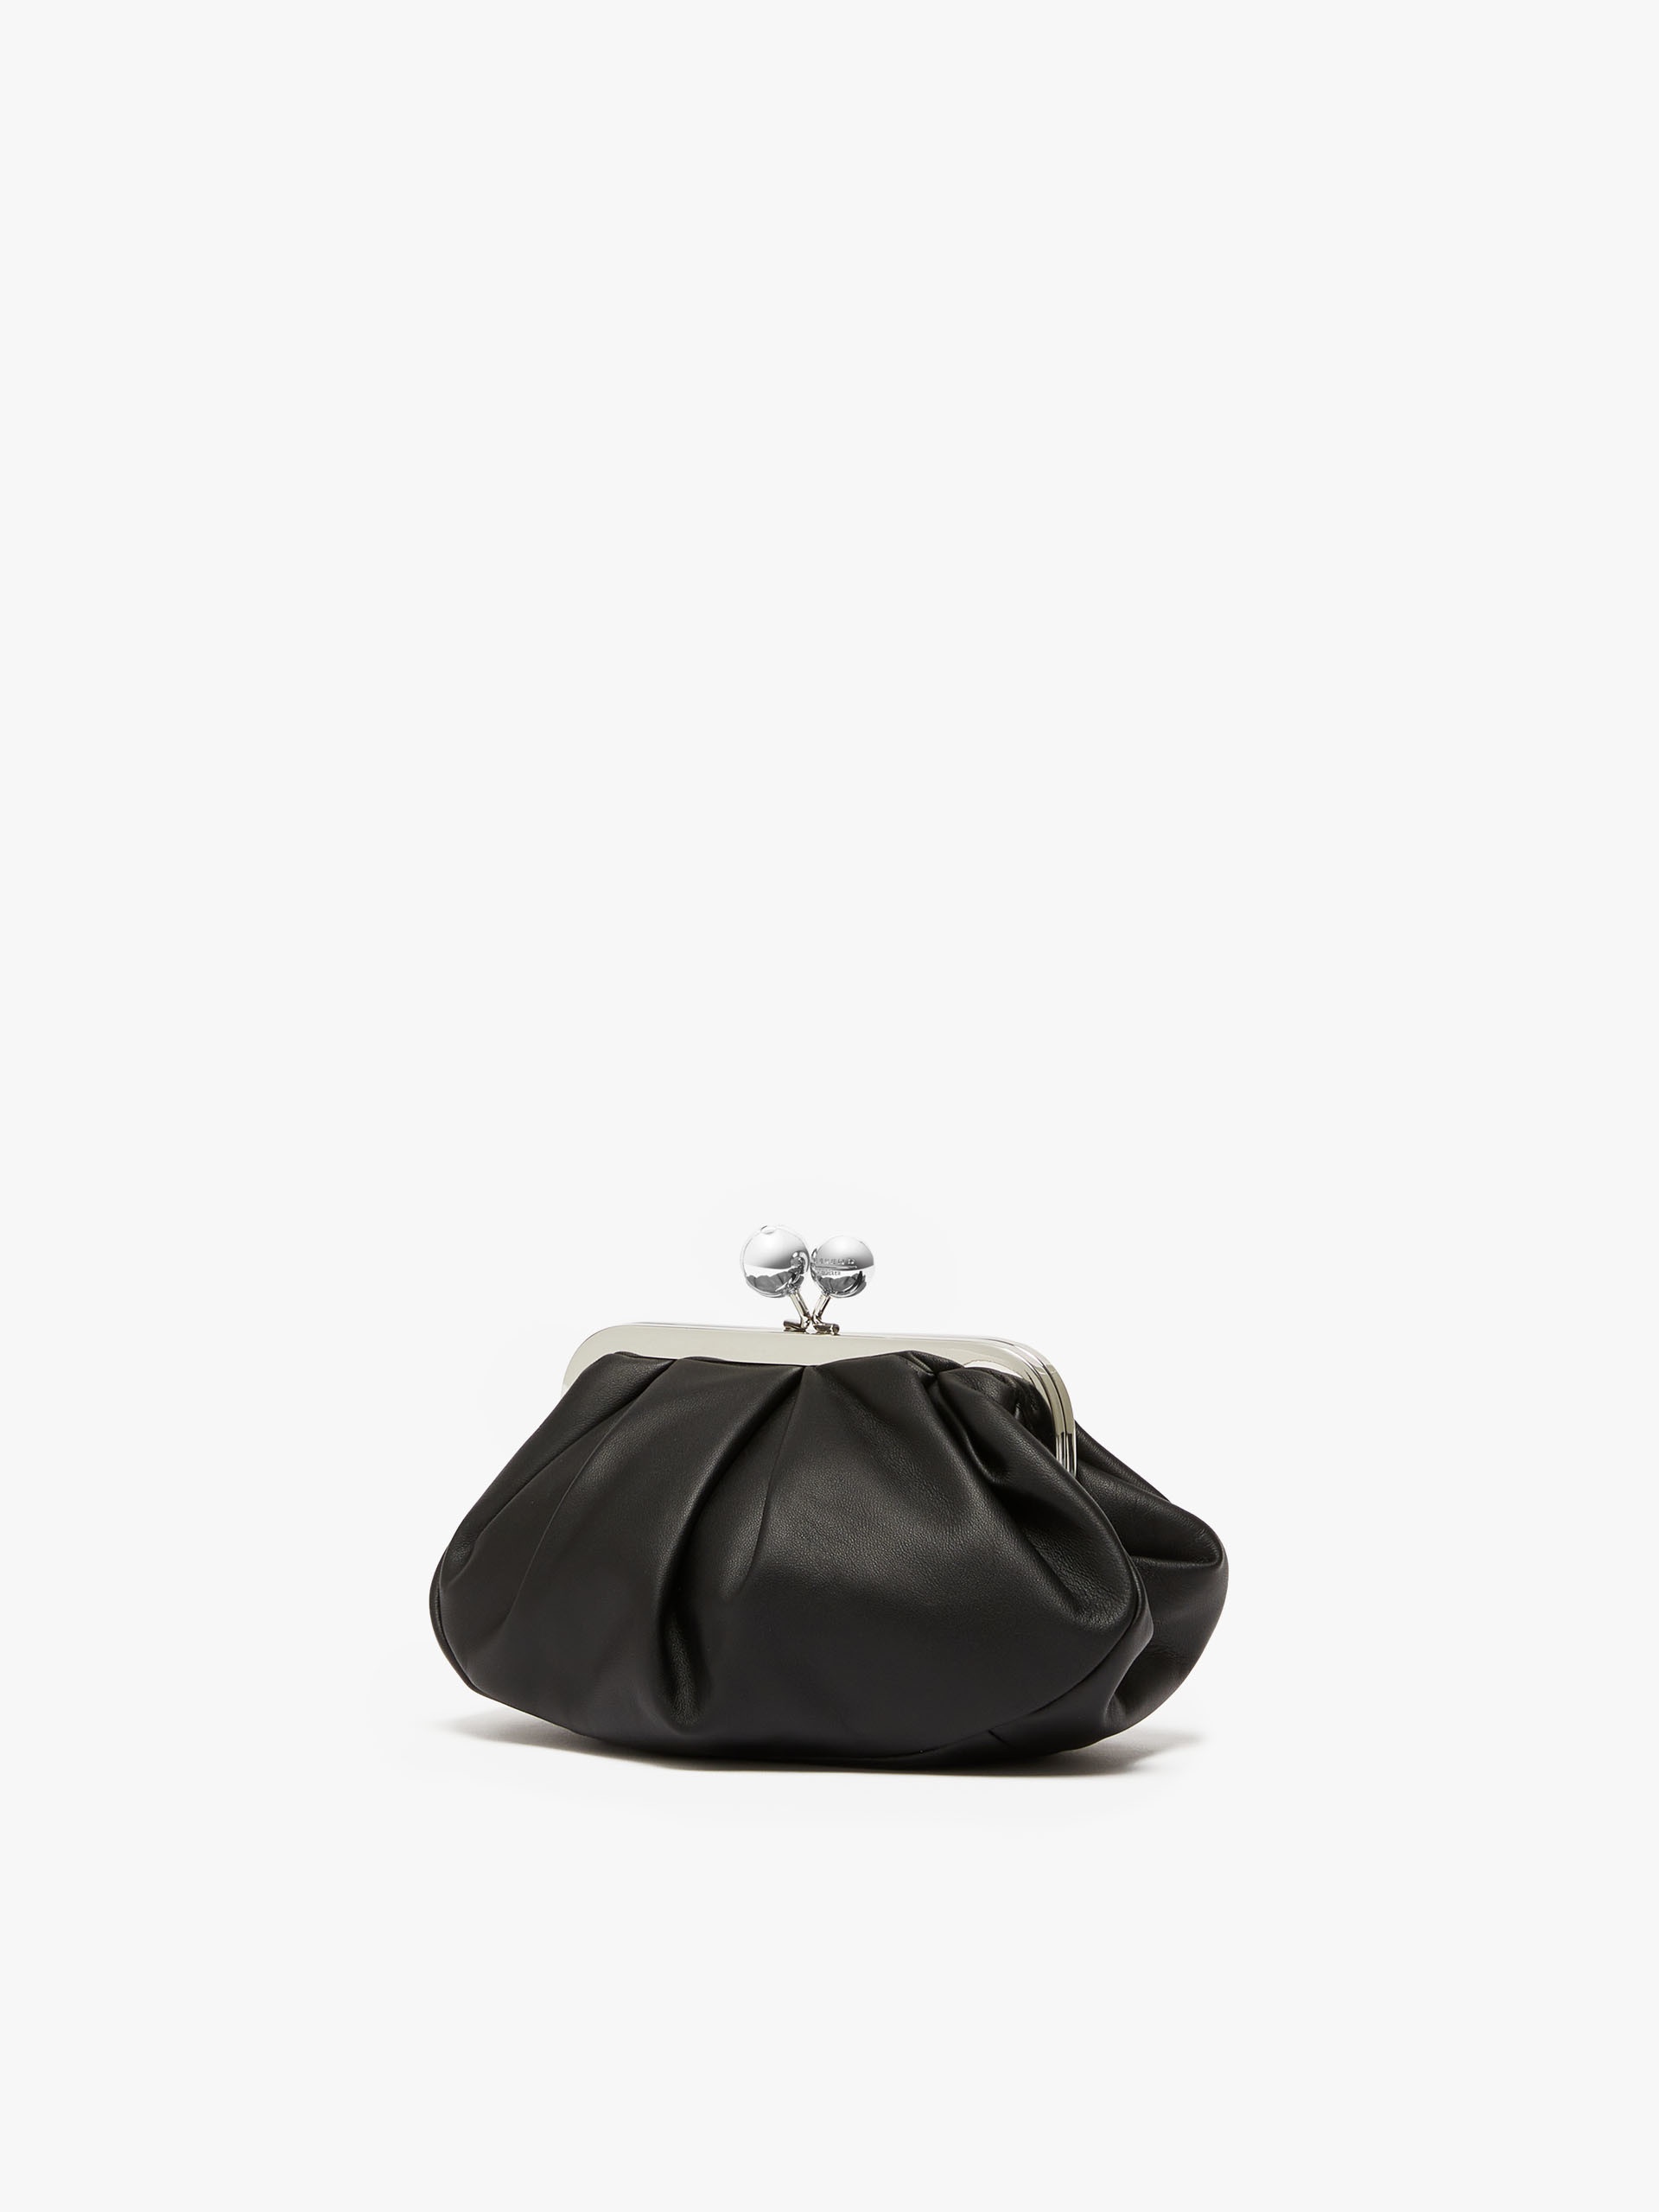 PRATI Small Pasticcino Bag in nappa leather - 2